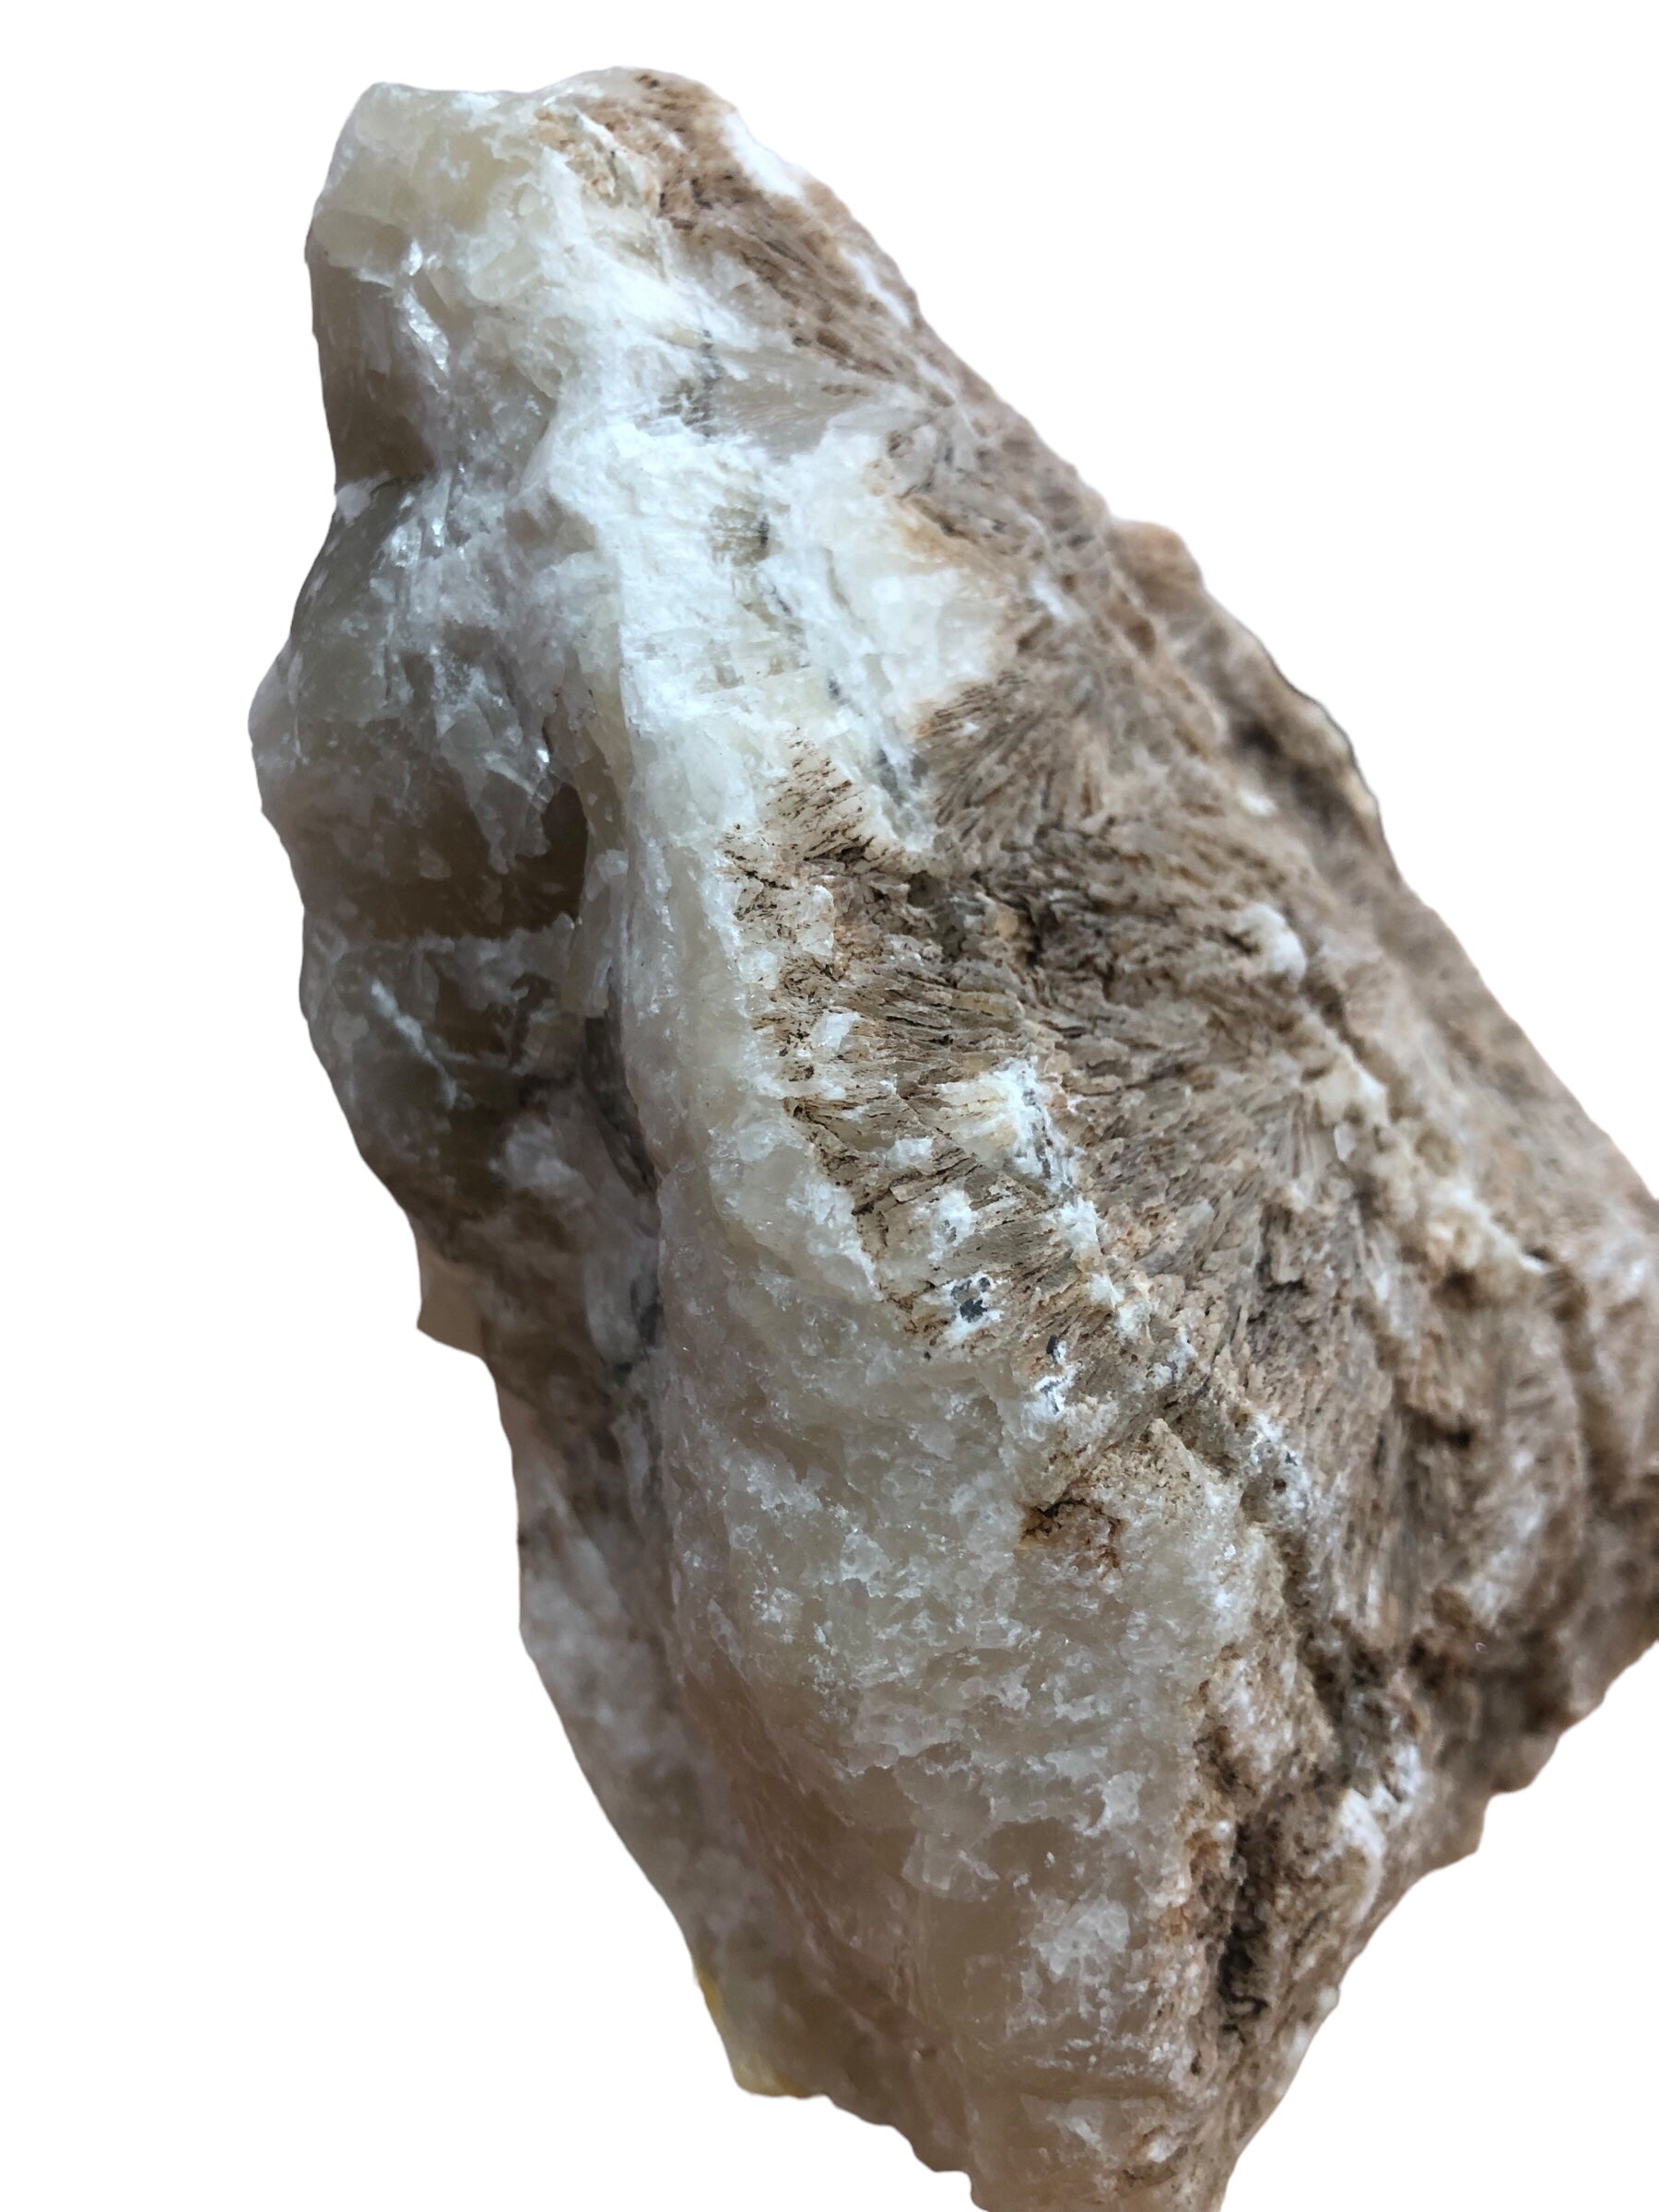 Crystalized stone on base